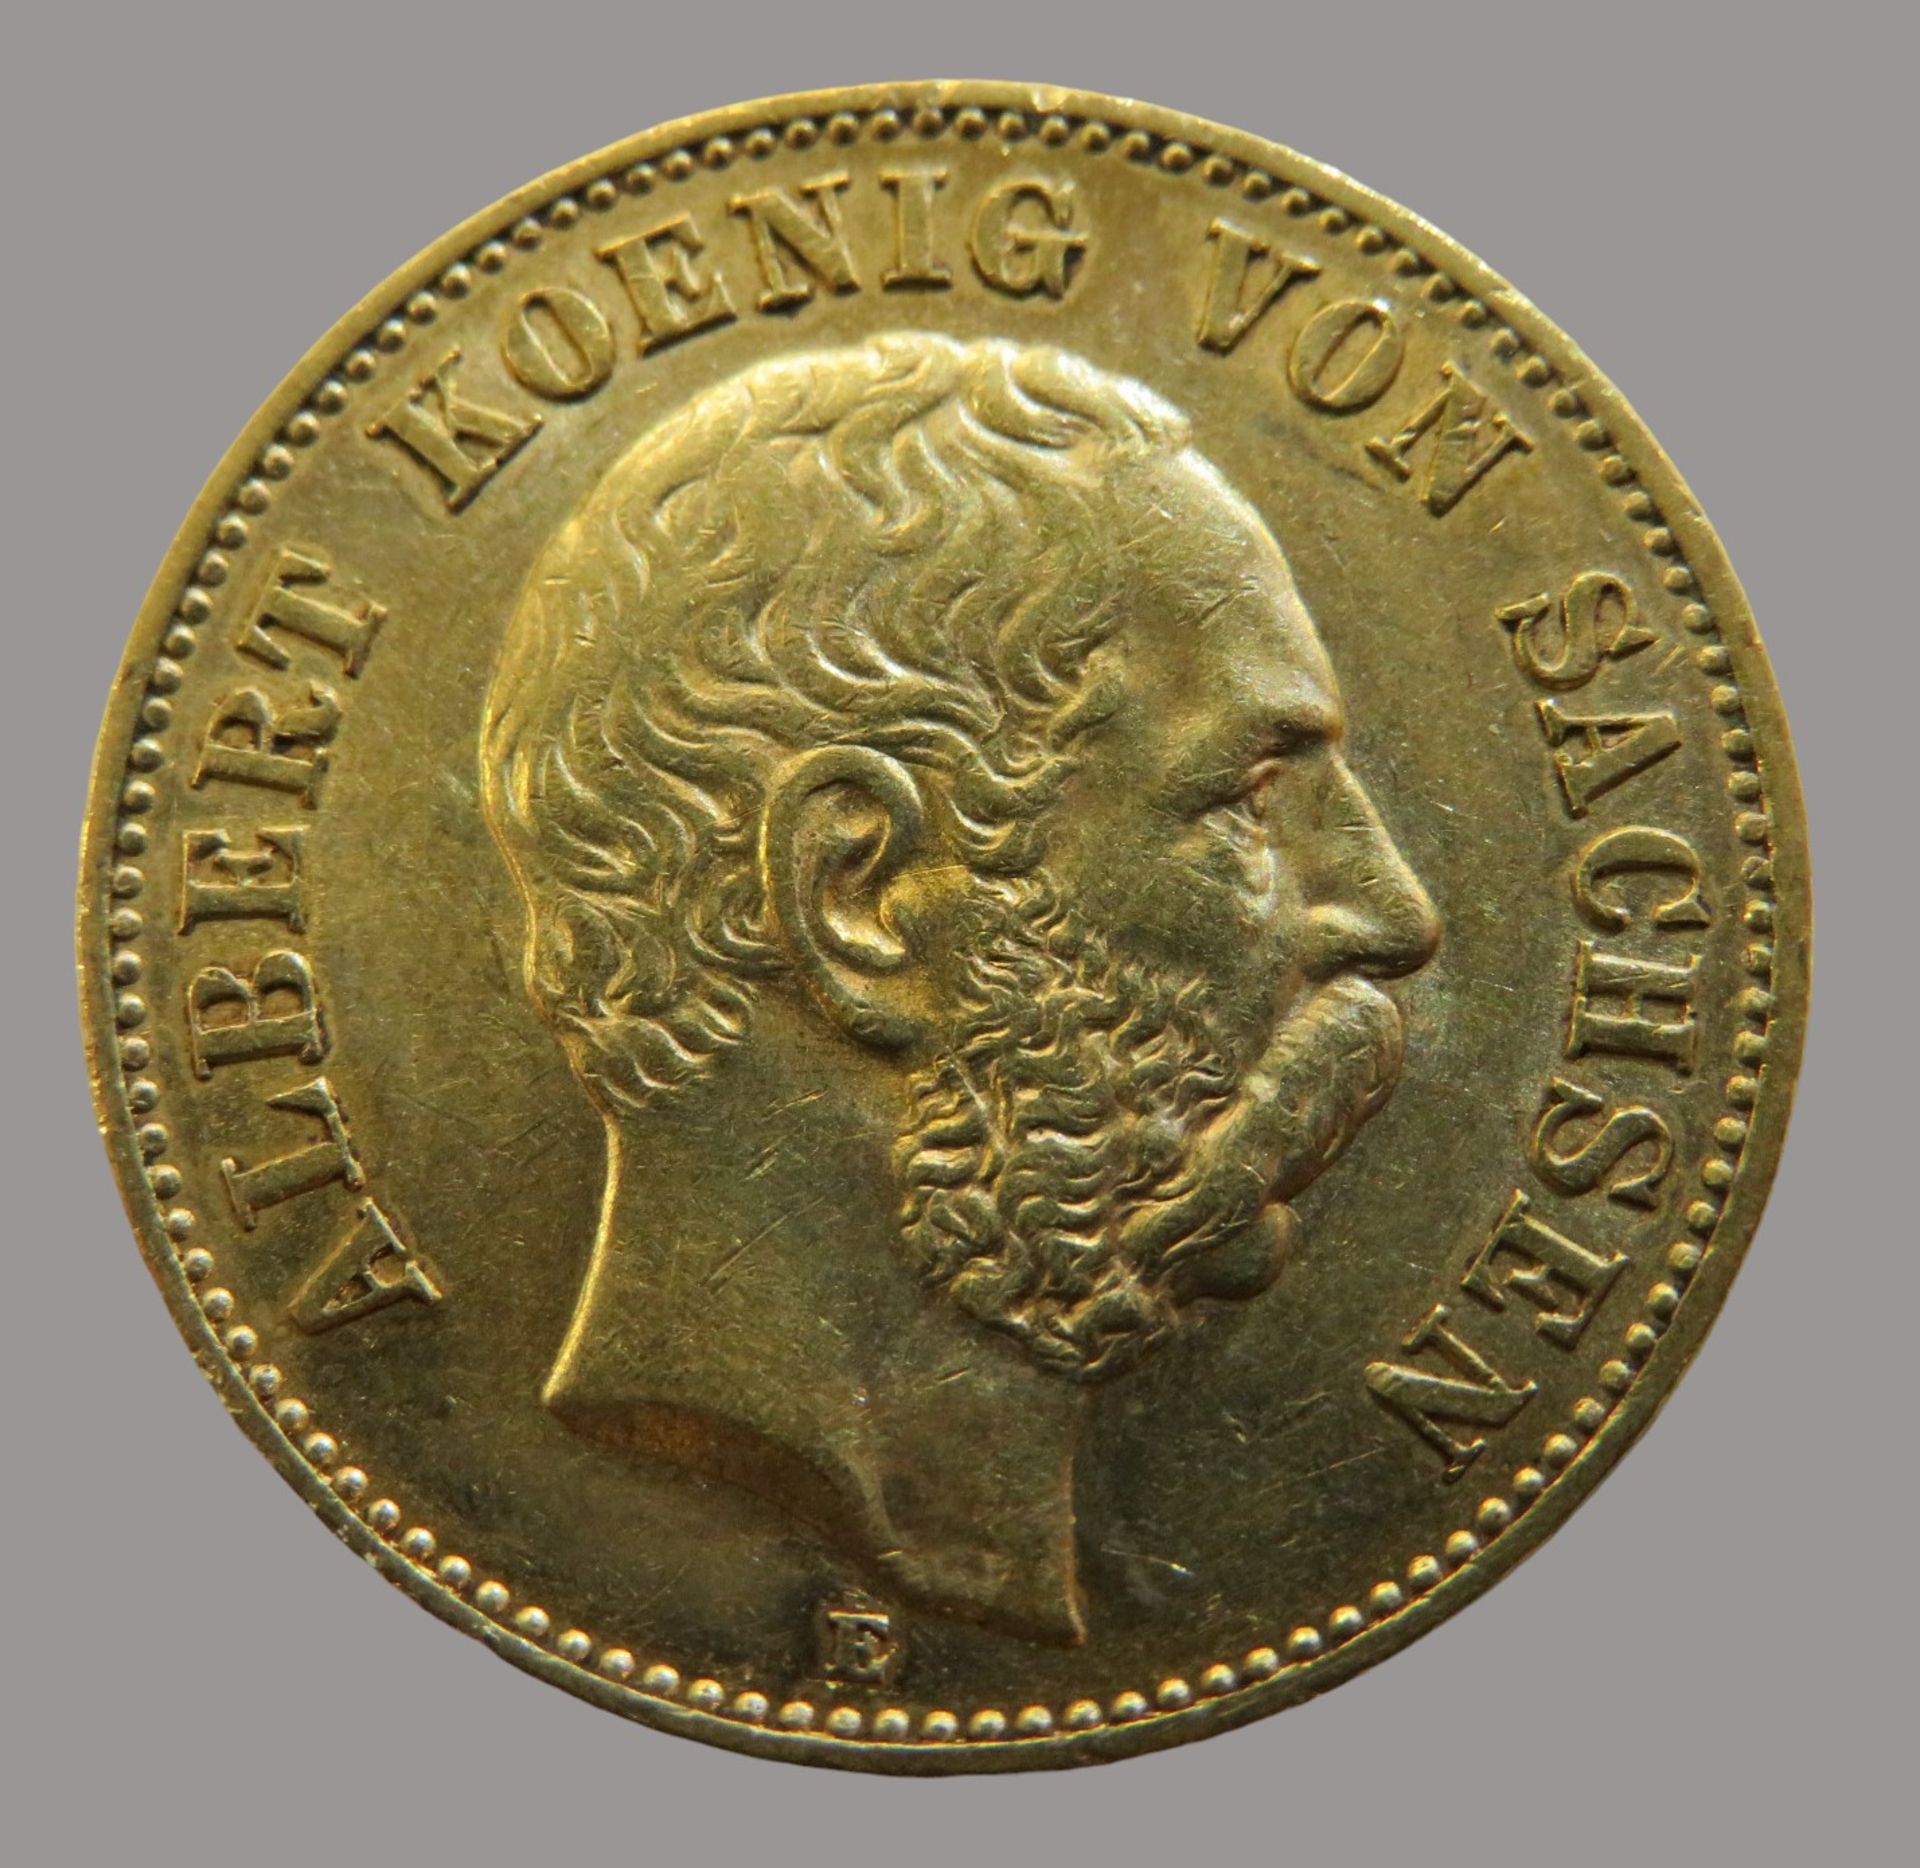 Goldmünze, 20 Mark, Albert von Sachsen, 1895E, Gold 900/000, 7,96 g, J 264, Erhaltungszustand SS, d